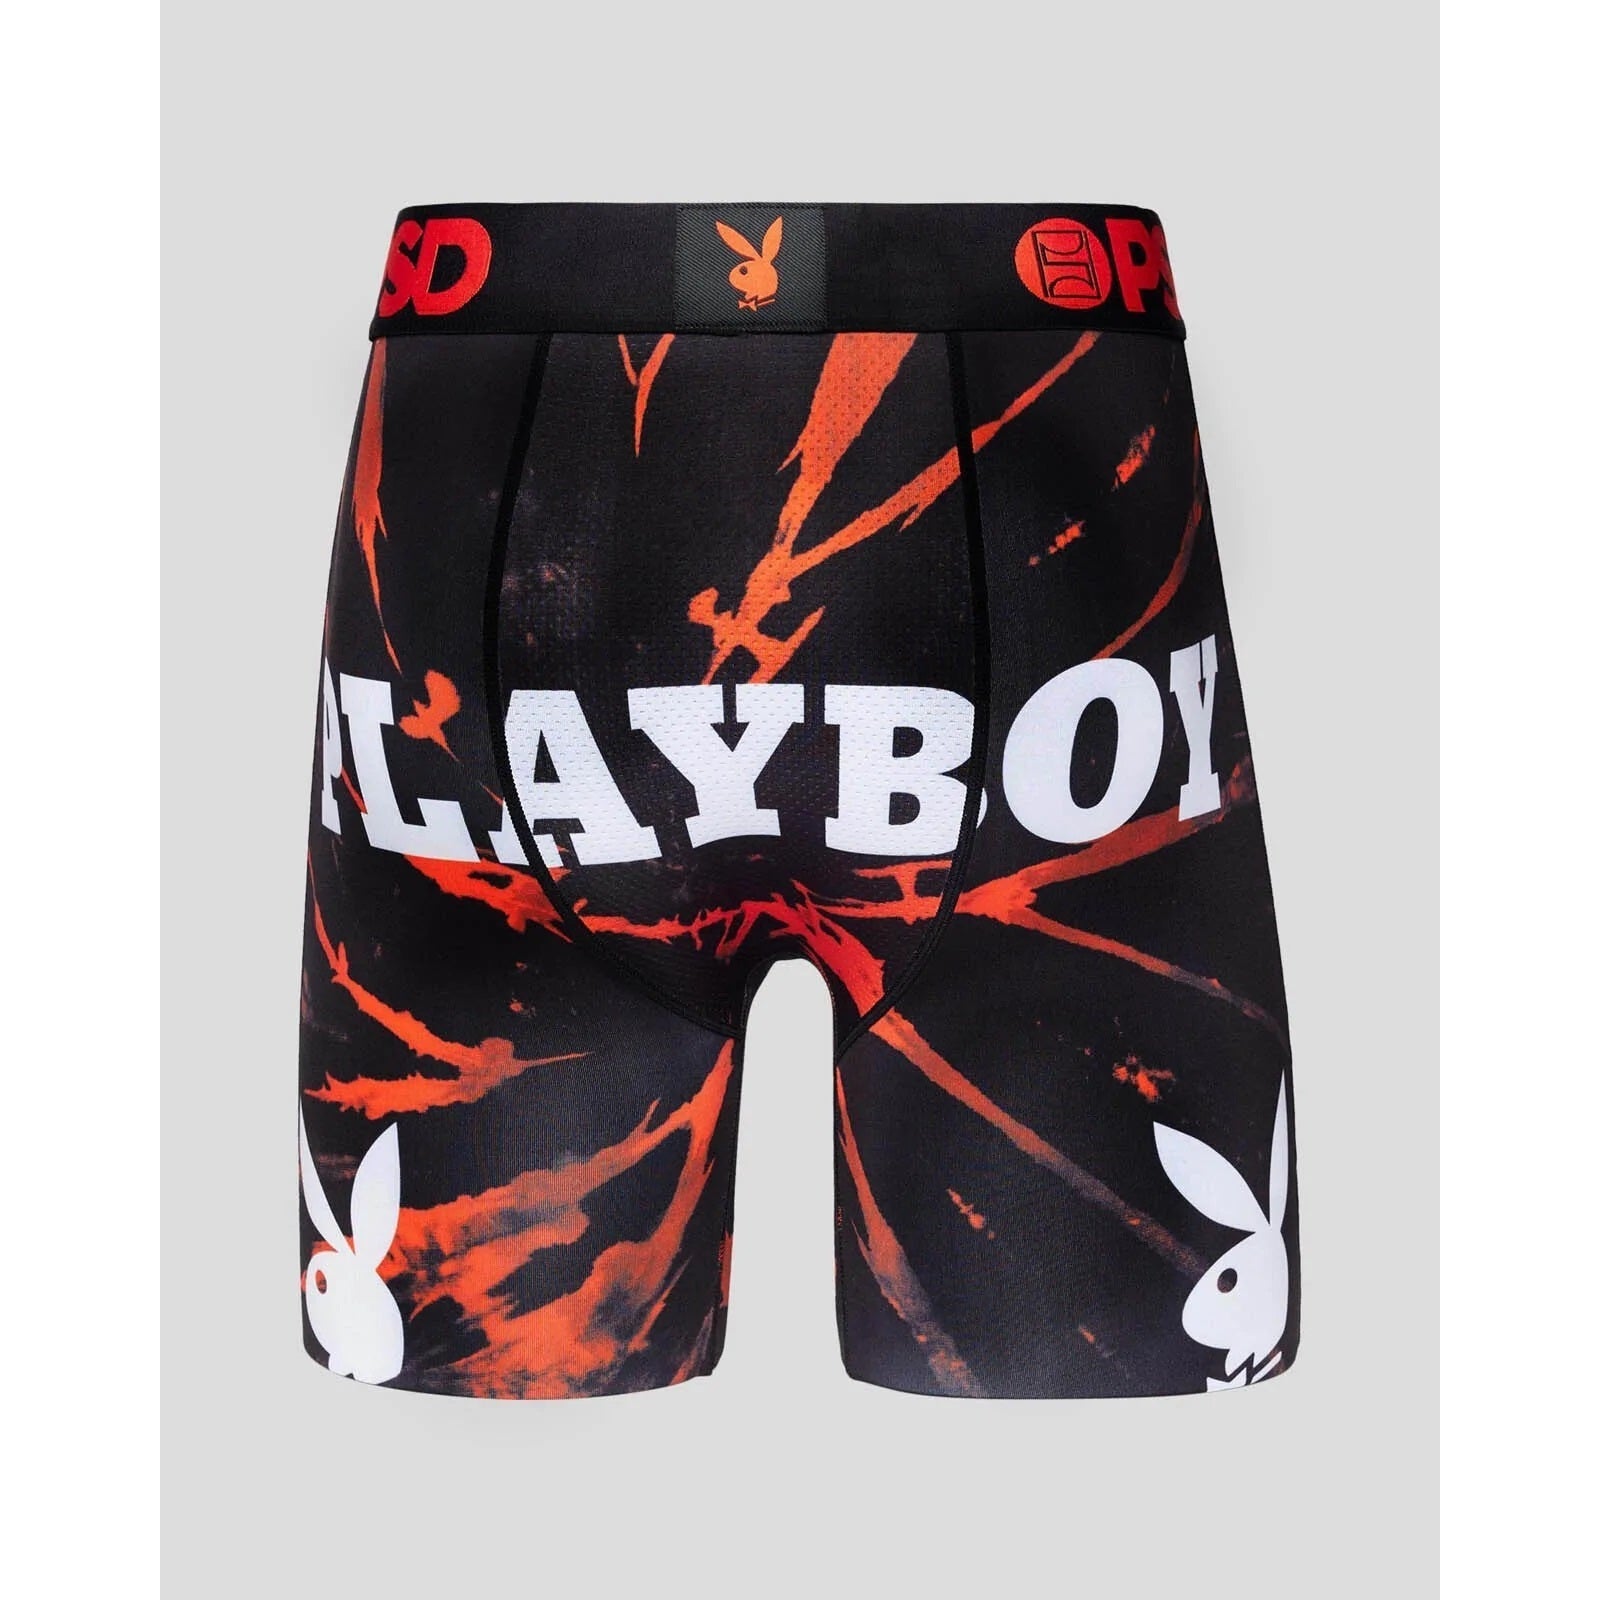 https://www.scarlettdawn.com.au/cdn/shop/products/playboy-spiral-dye-boxer-briefs-4_2048x.jpg?v=1676426960